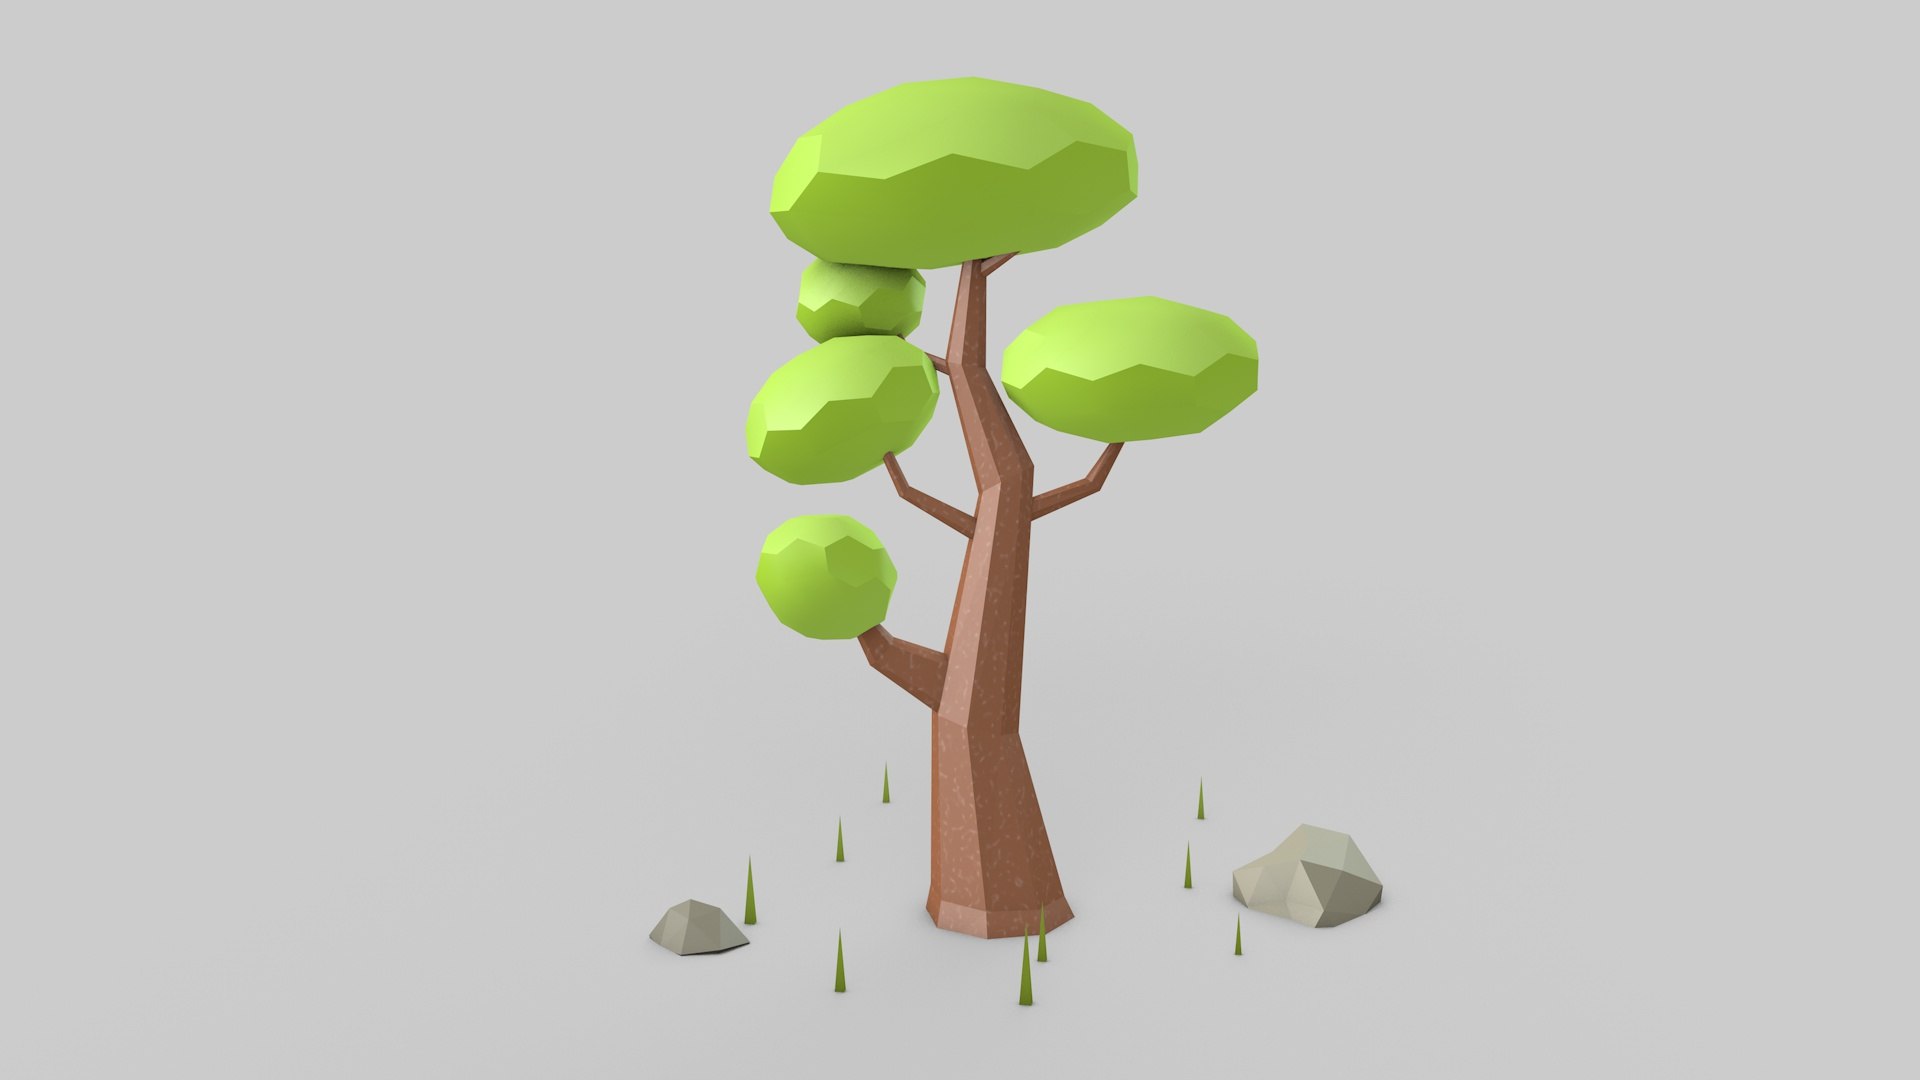 Unity trees. Деревья 3d Unity. Модель дерева с яблоками 3д игра. Сосна 3д. Tree 3d model for Unity.